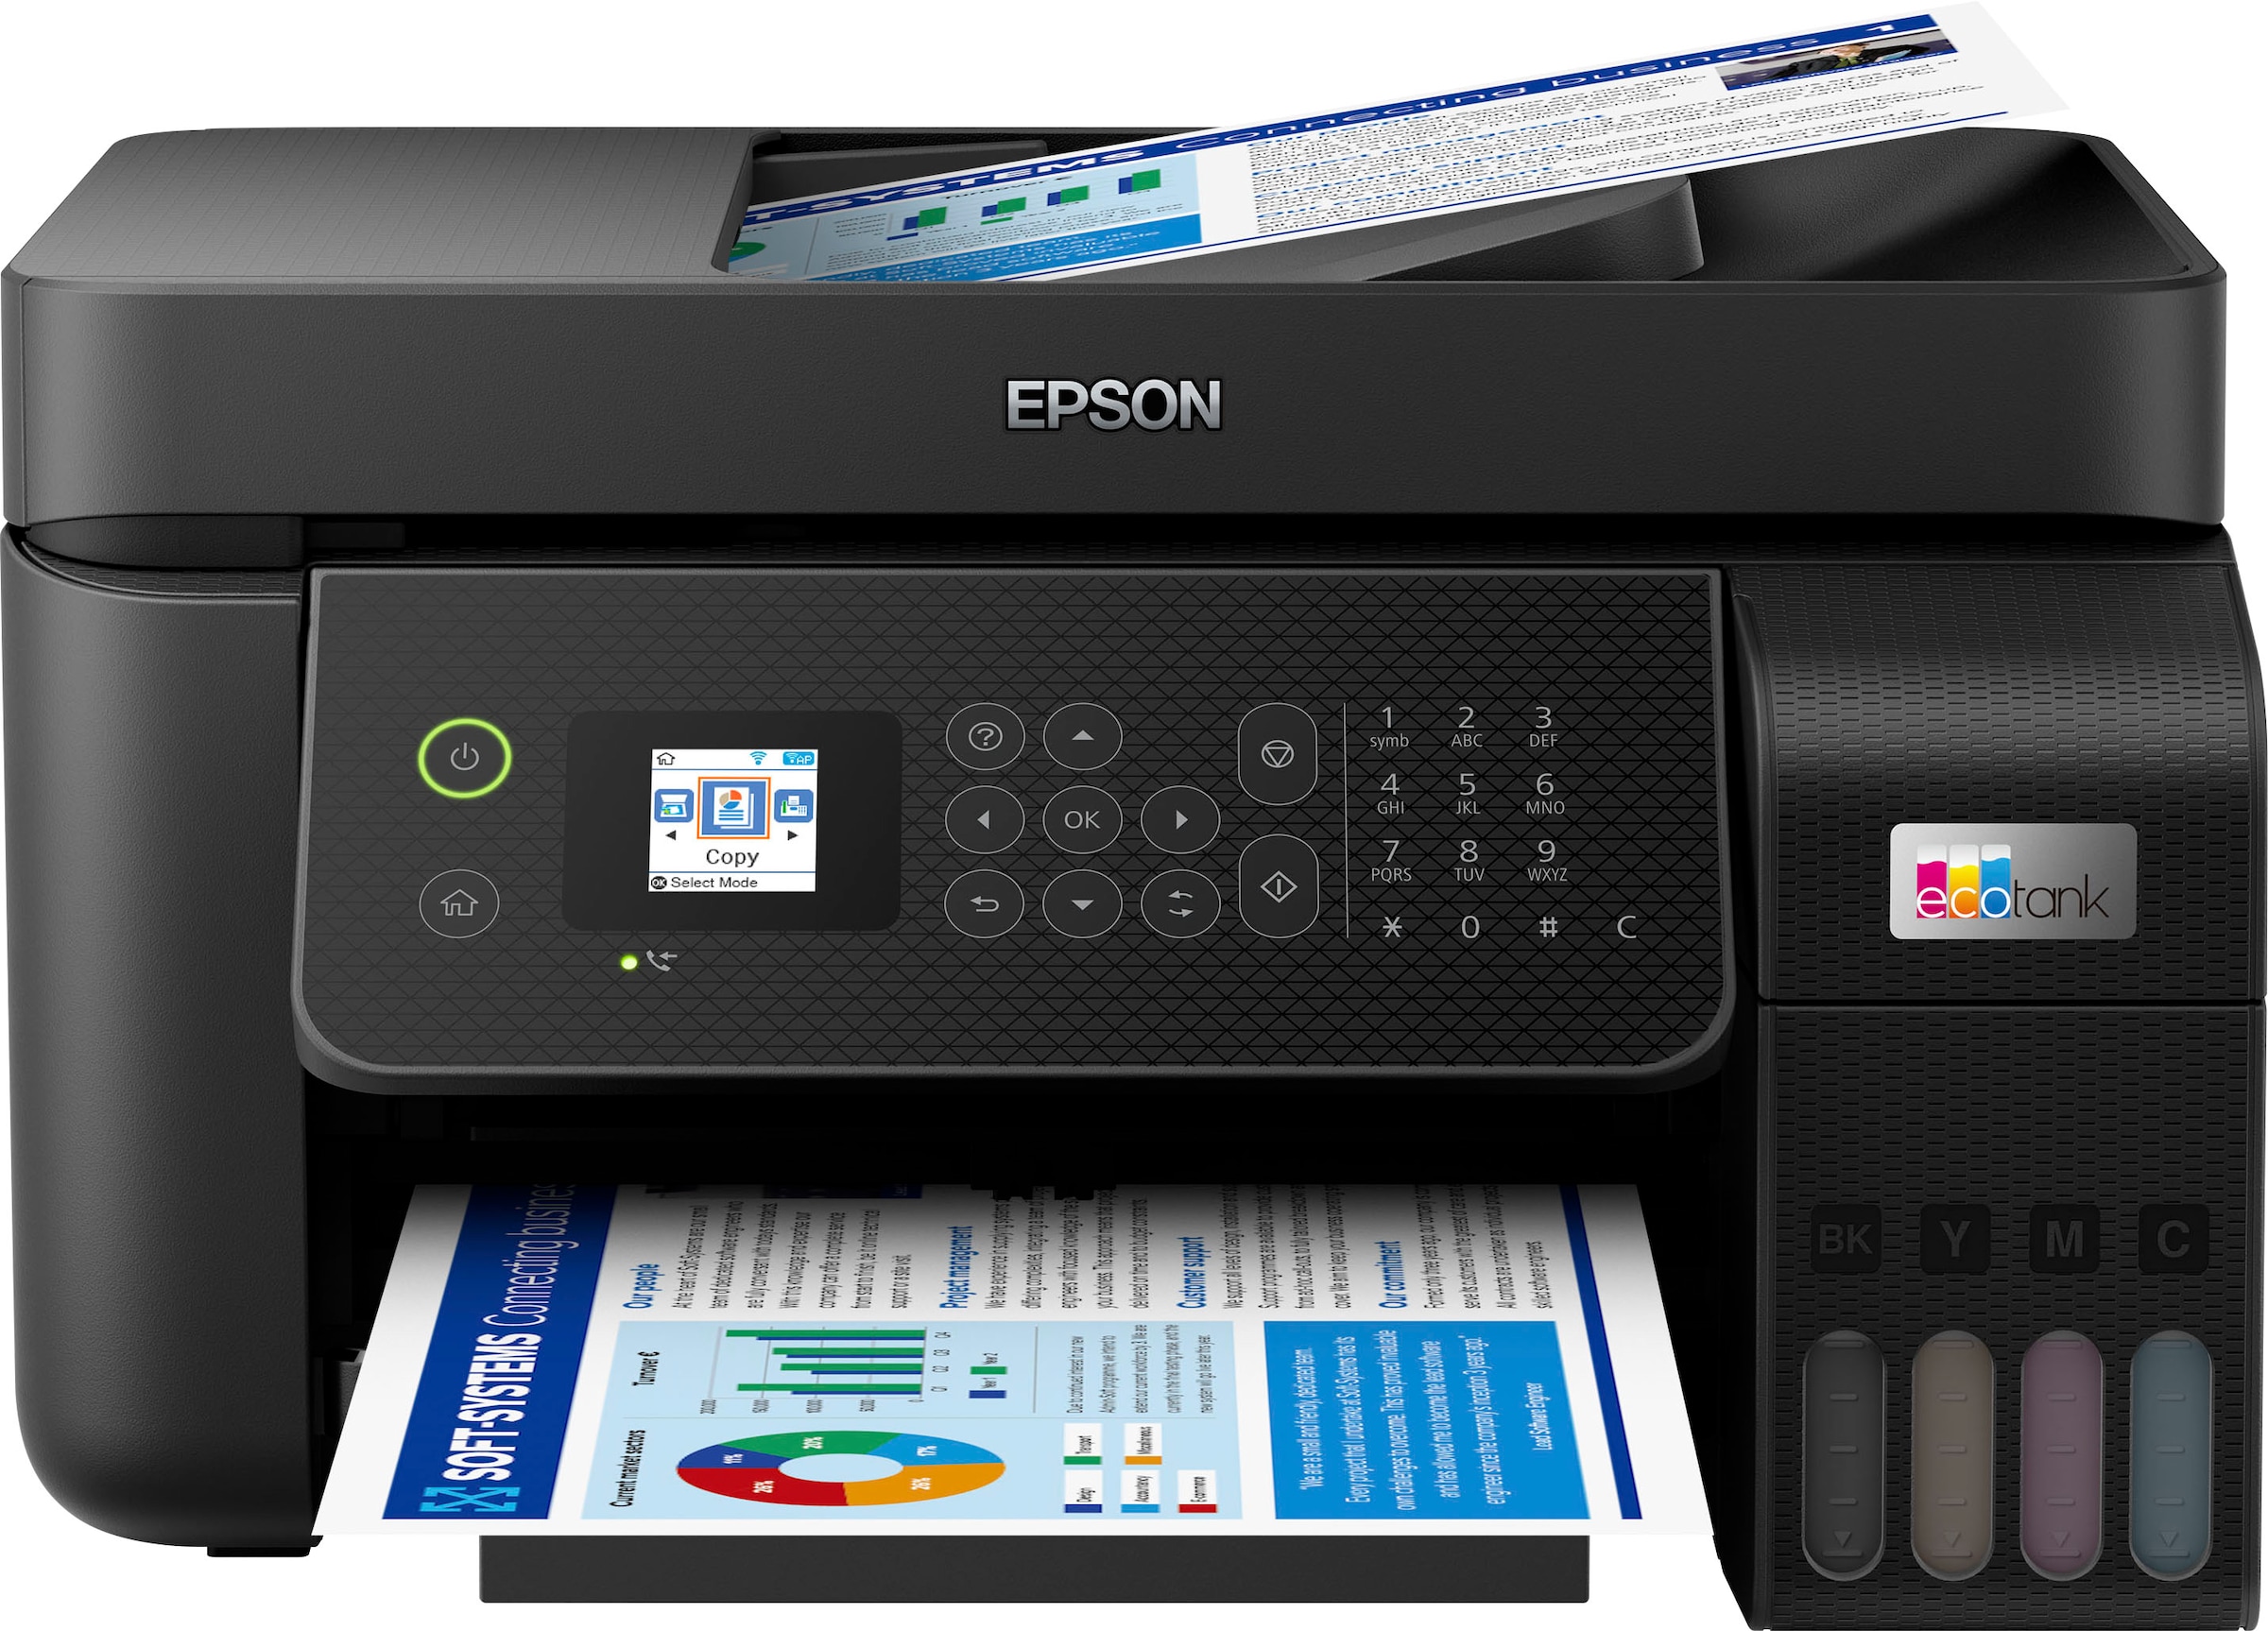 Epson Multifunktionsdrucker ET-4800« bei OTTO »EcoTank jetzt kaufen